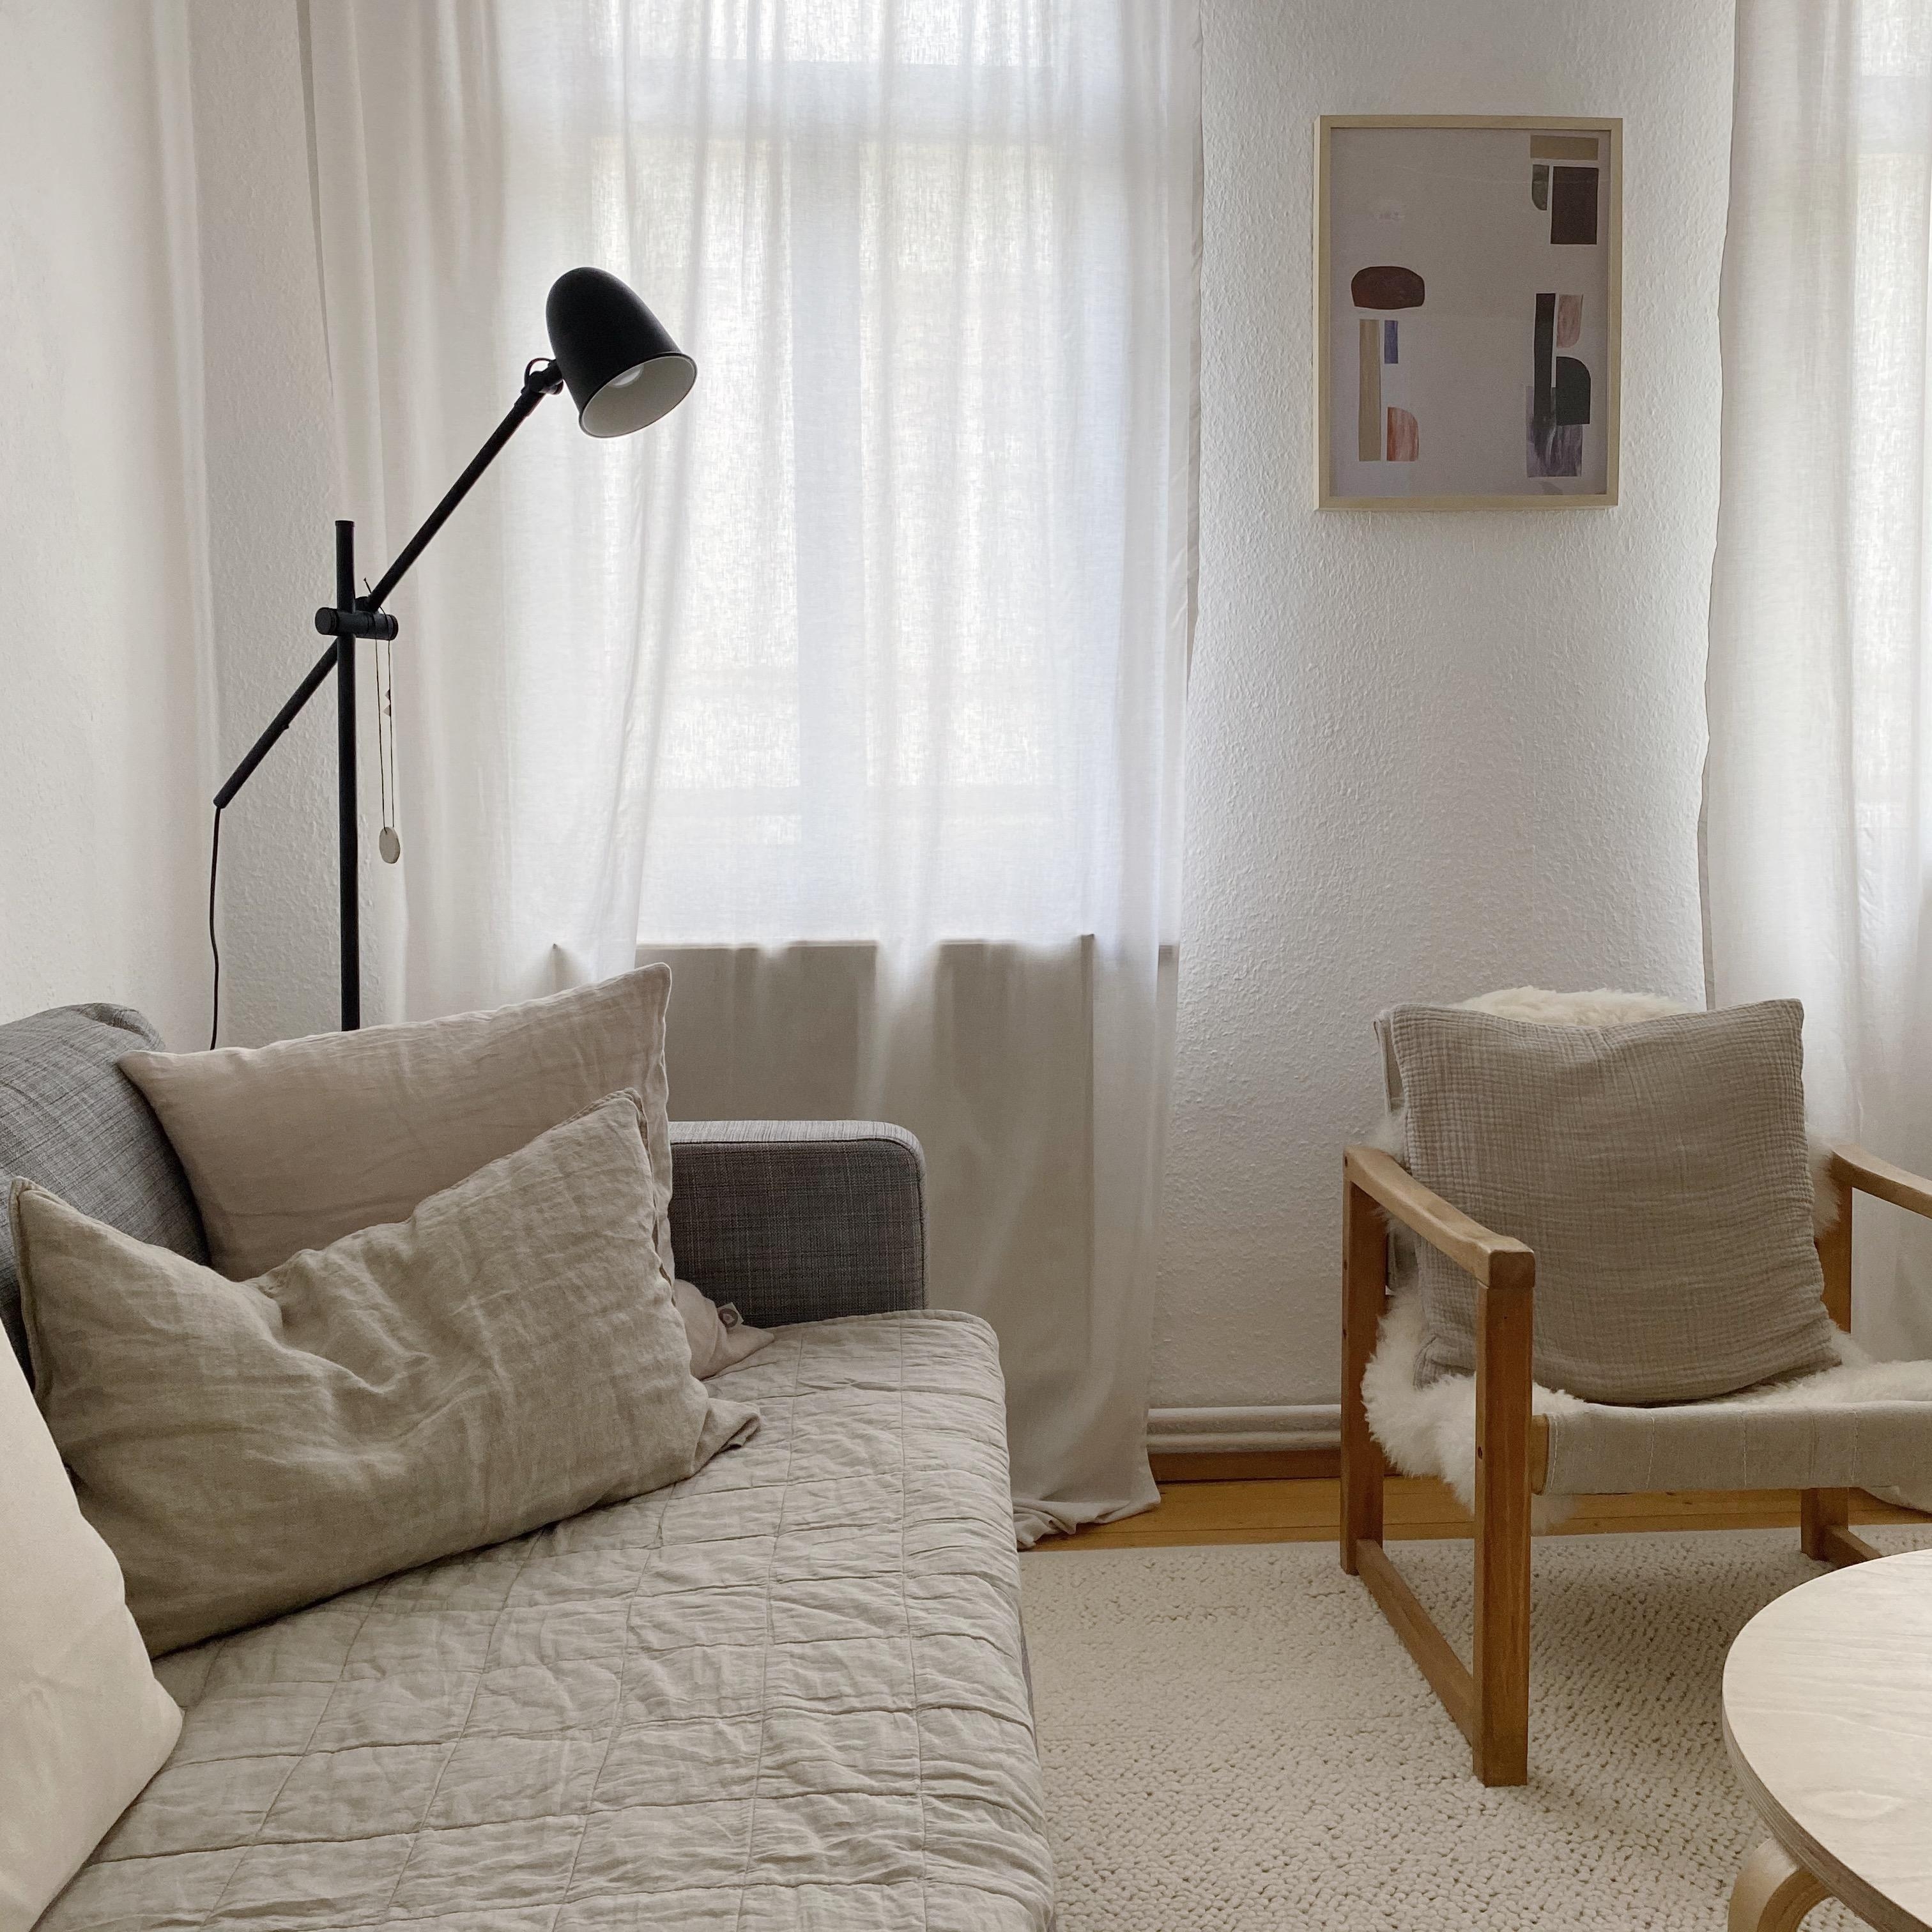 Kleines Wohnzimmer-Makeover: mehr softe Töne und Textilien. 

#livingroom #wohnzimmer #textilien #naturaltones #beige